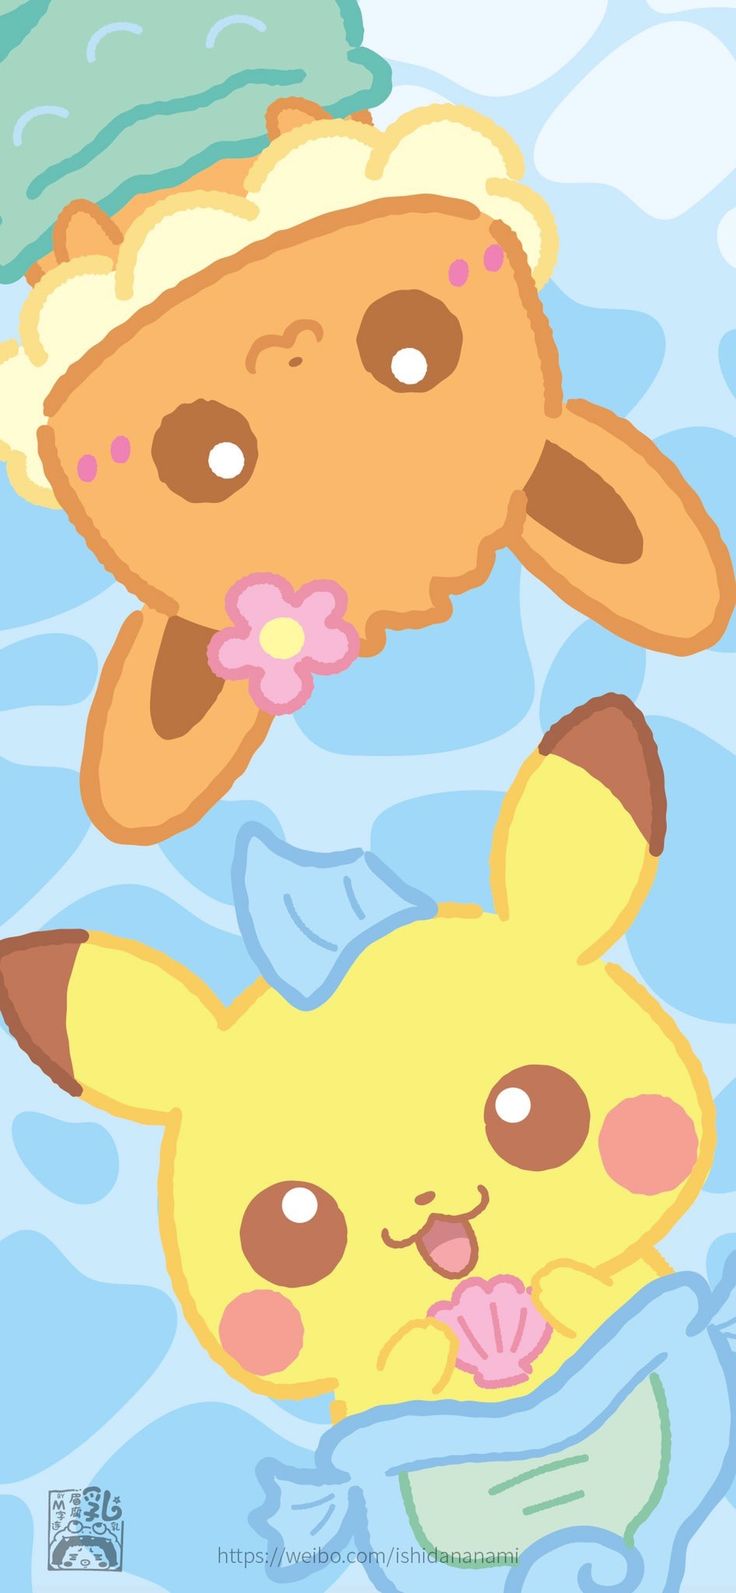 Pokemon. Cute pokemon wallpaper, Cute cartoon wallpaper, Pokemon eevee